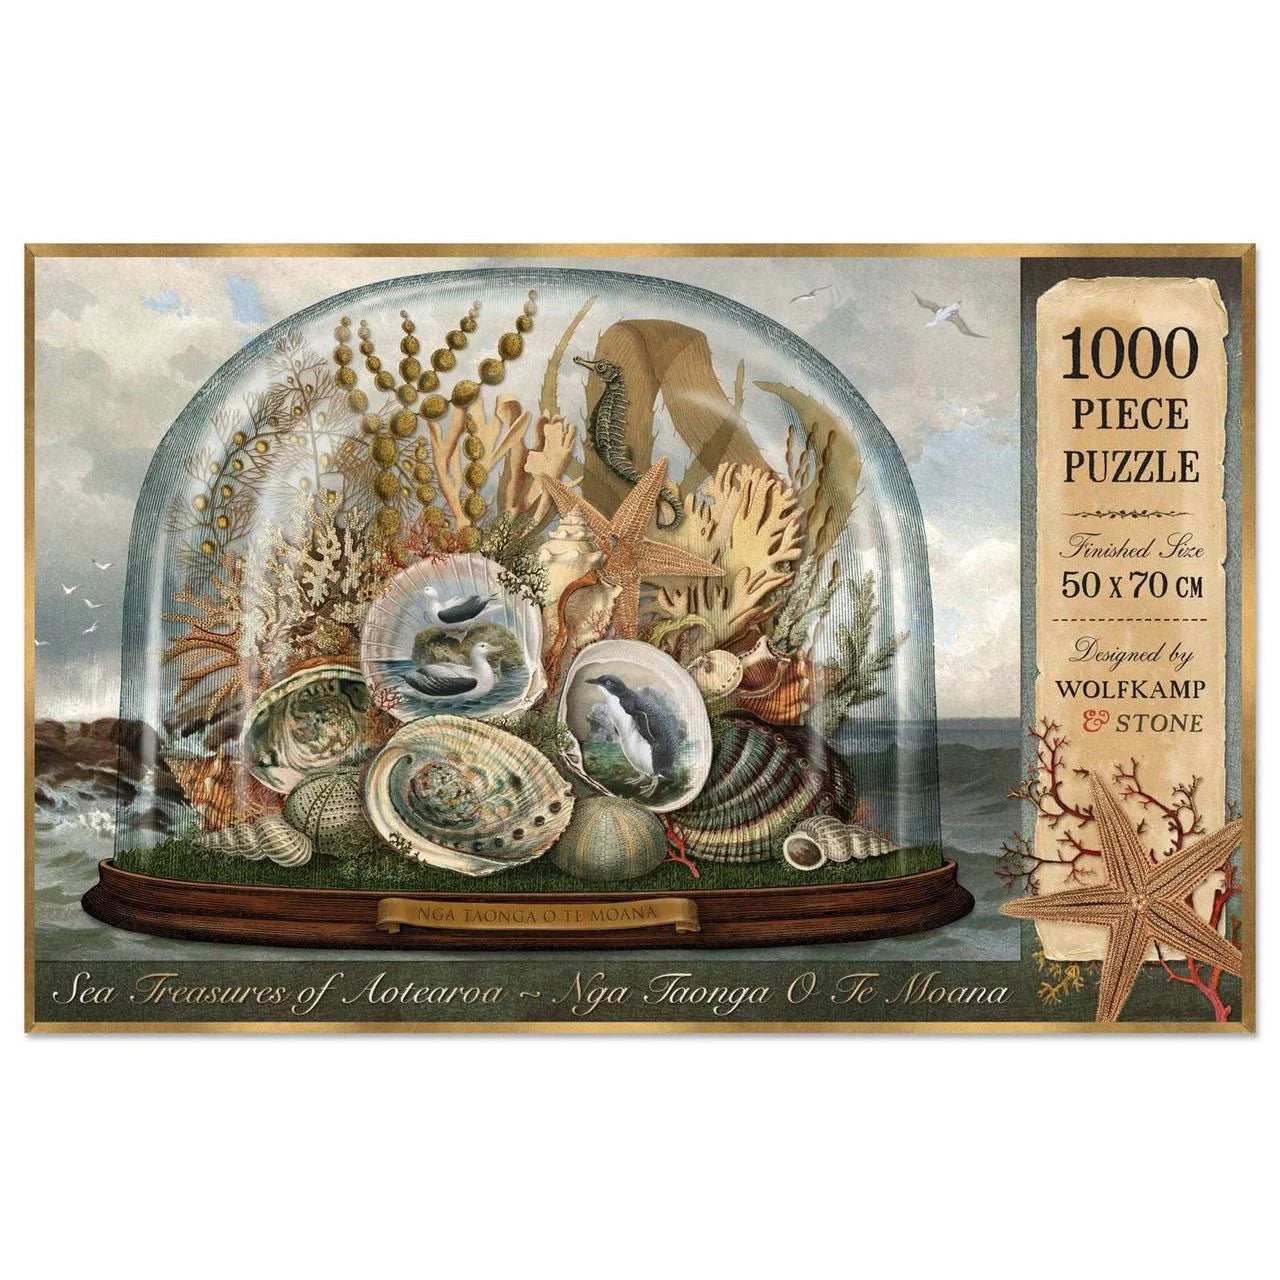 SEA TREASURES OF AOTEAROA PUZZLE 1000 PIECE